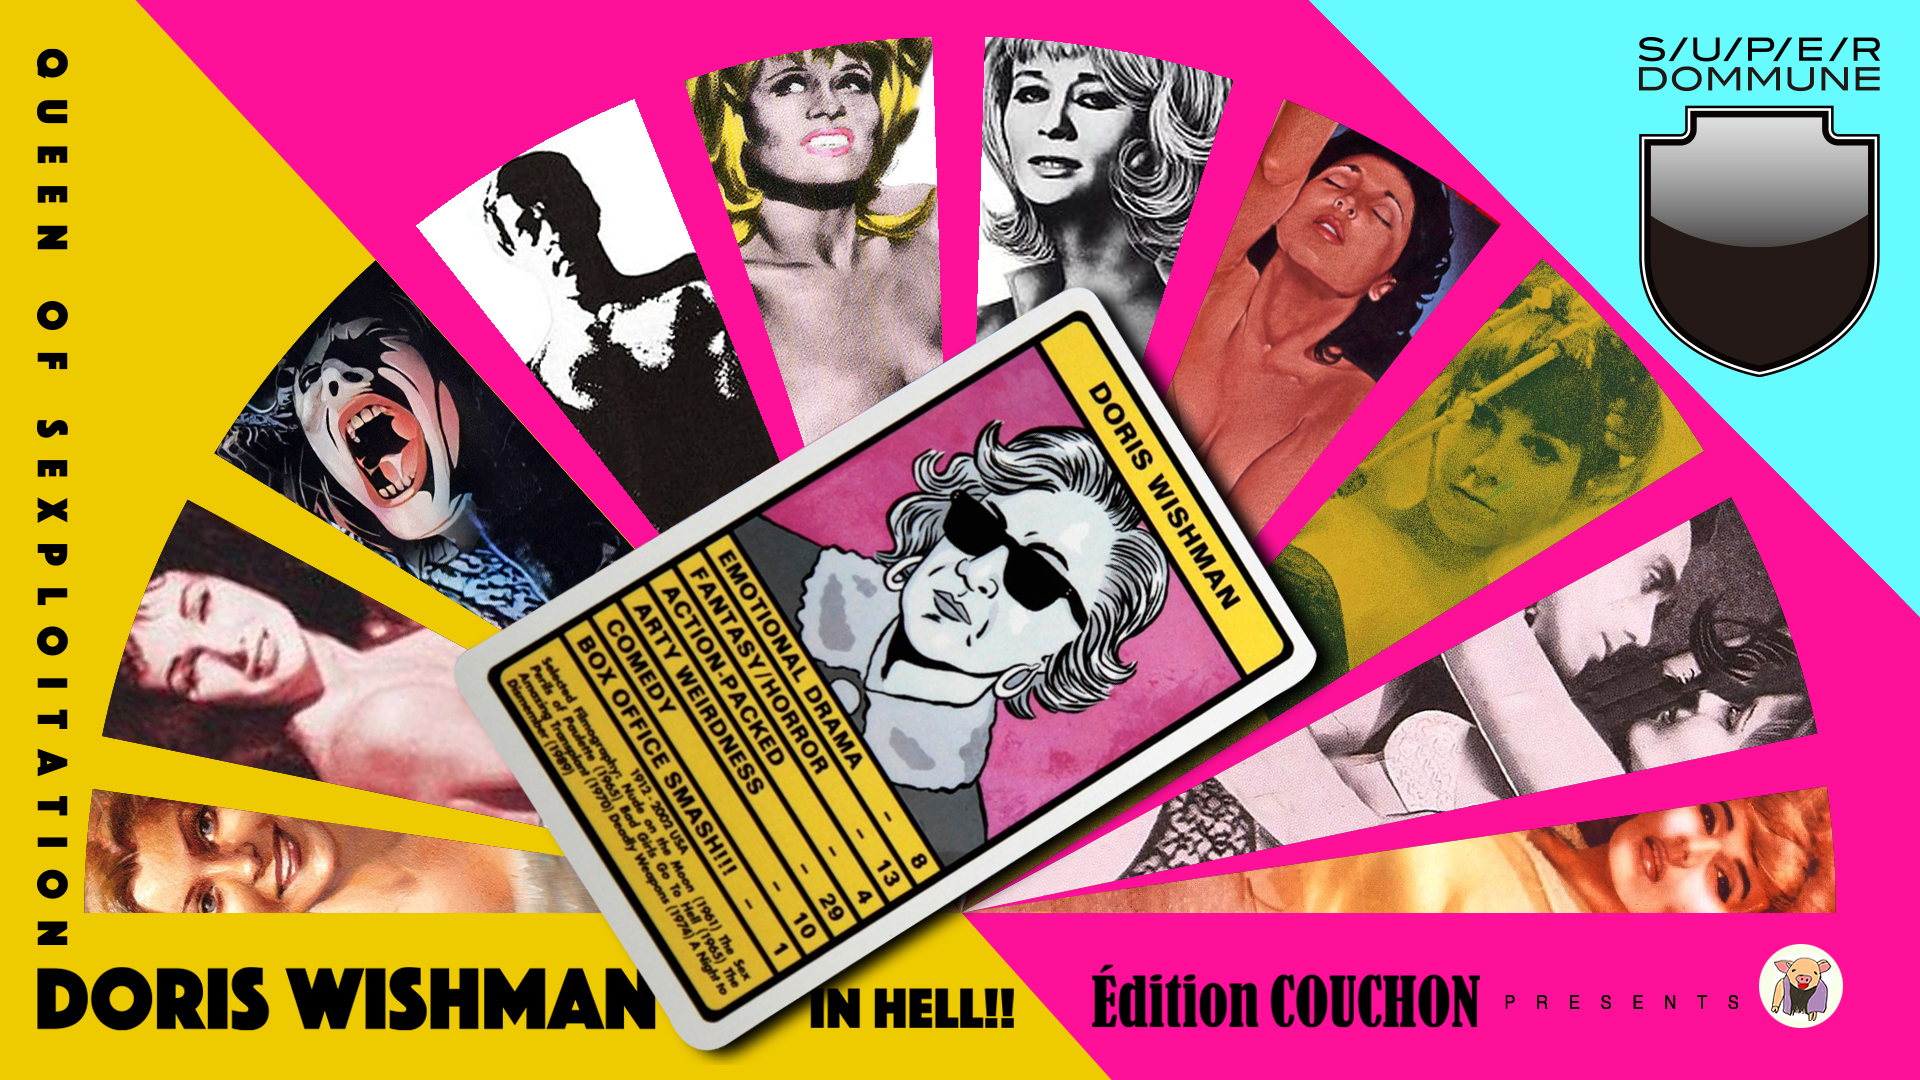 Édition COUCHON Presents ｢Queen of Sexploitation Doris Wishman in  HELL!!」大好き!ドリス・ウィッシュマン DOMMUNE